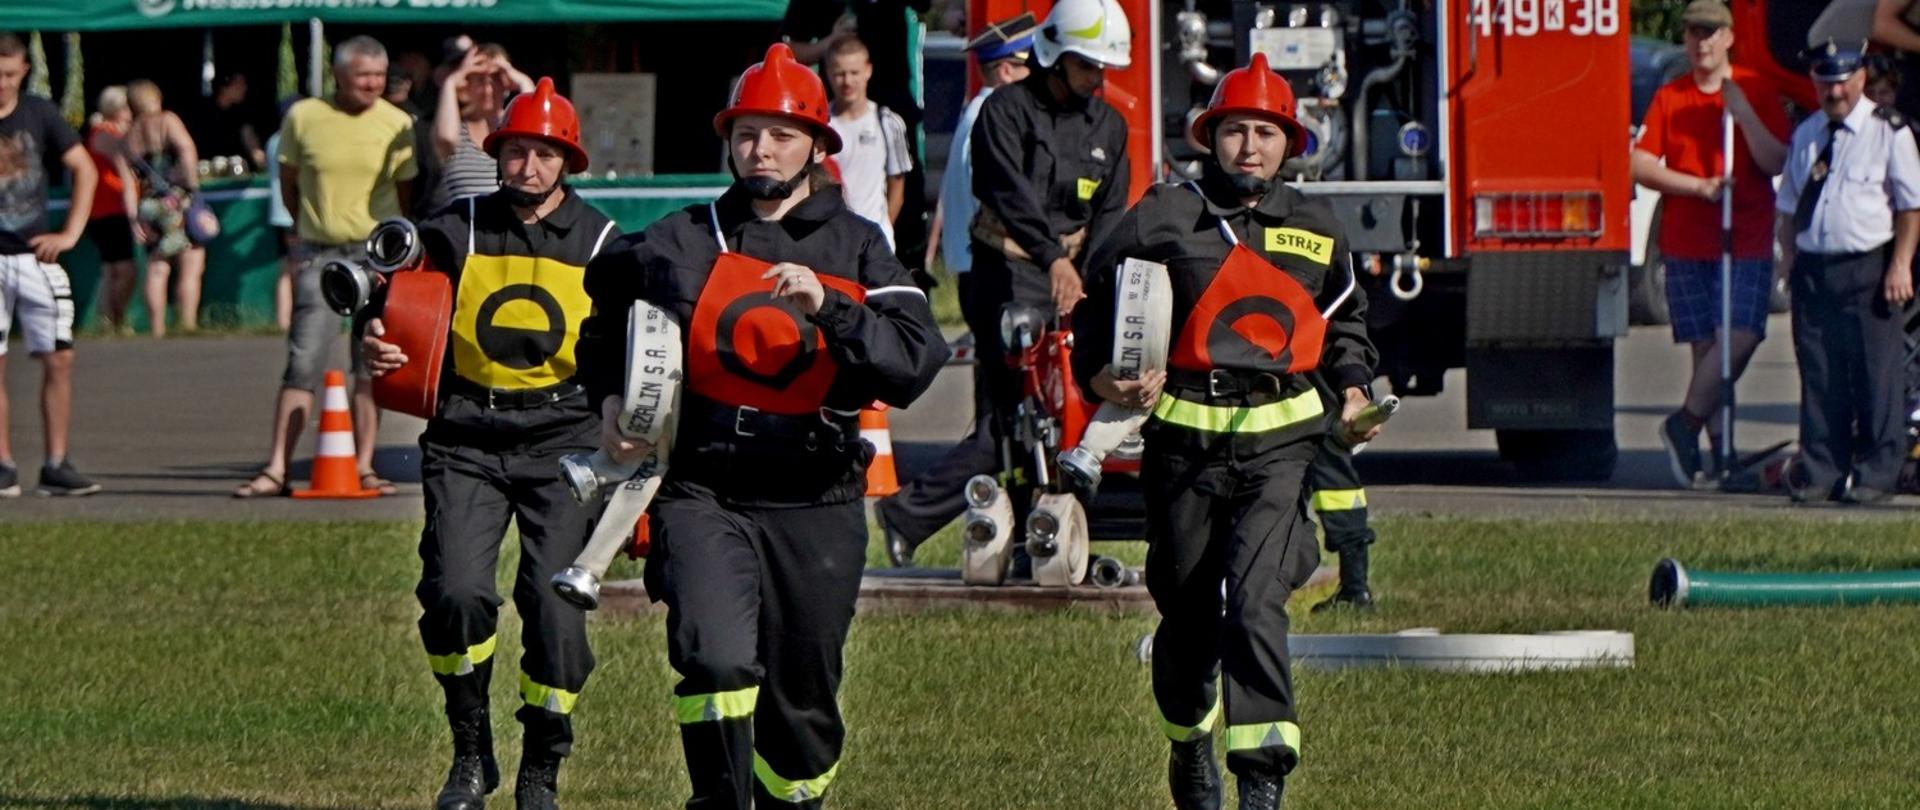 Na zdjęciu widoczni strażacy ochotnicy w ubraniach koszarowych rozwijający linie gaśnicze podczas XI Powiatowych Zawodów Sportowo - Pożarniczych na stadionie w Uściu Gorlickim podczas konkurencji ćwiczenie bojowe.